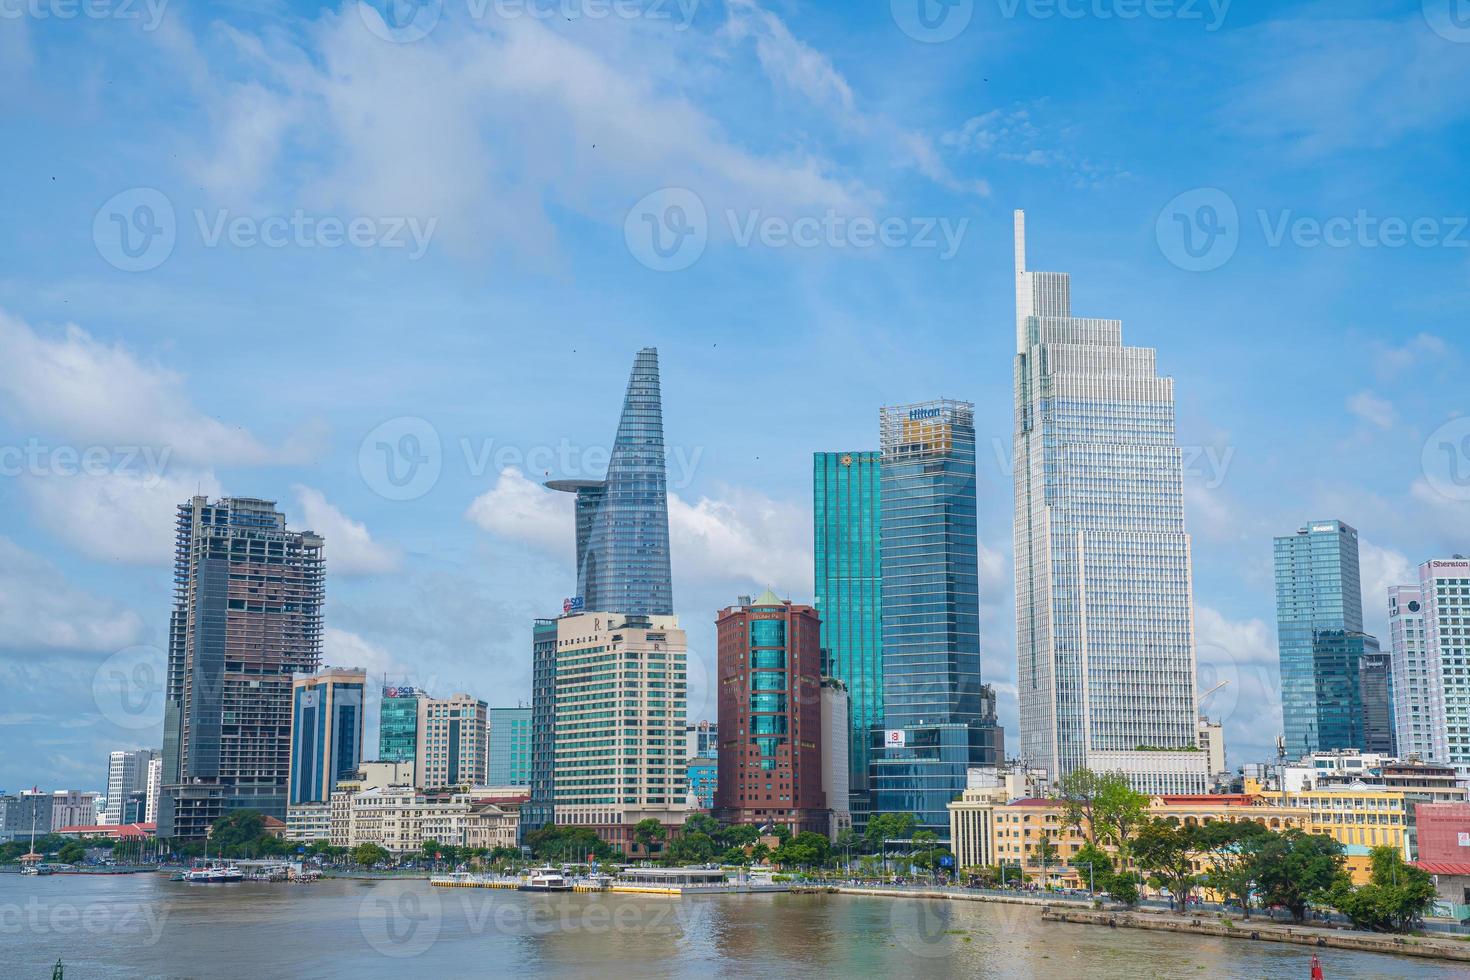 città di ho chi minh, vietnam - 22 maggio 2022 torre finanziaria bitexco, grattacielo visto dal basso verso un cielo. sviluppo urbano con architettura moderna foto